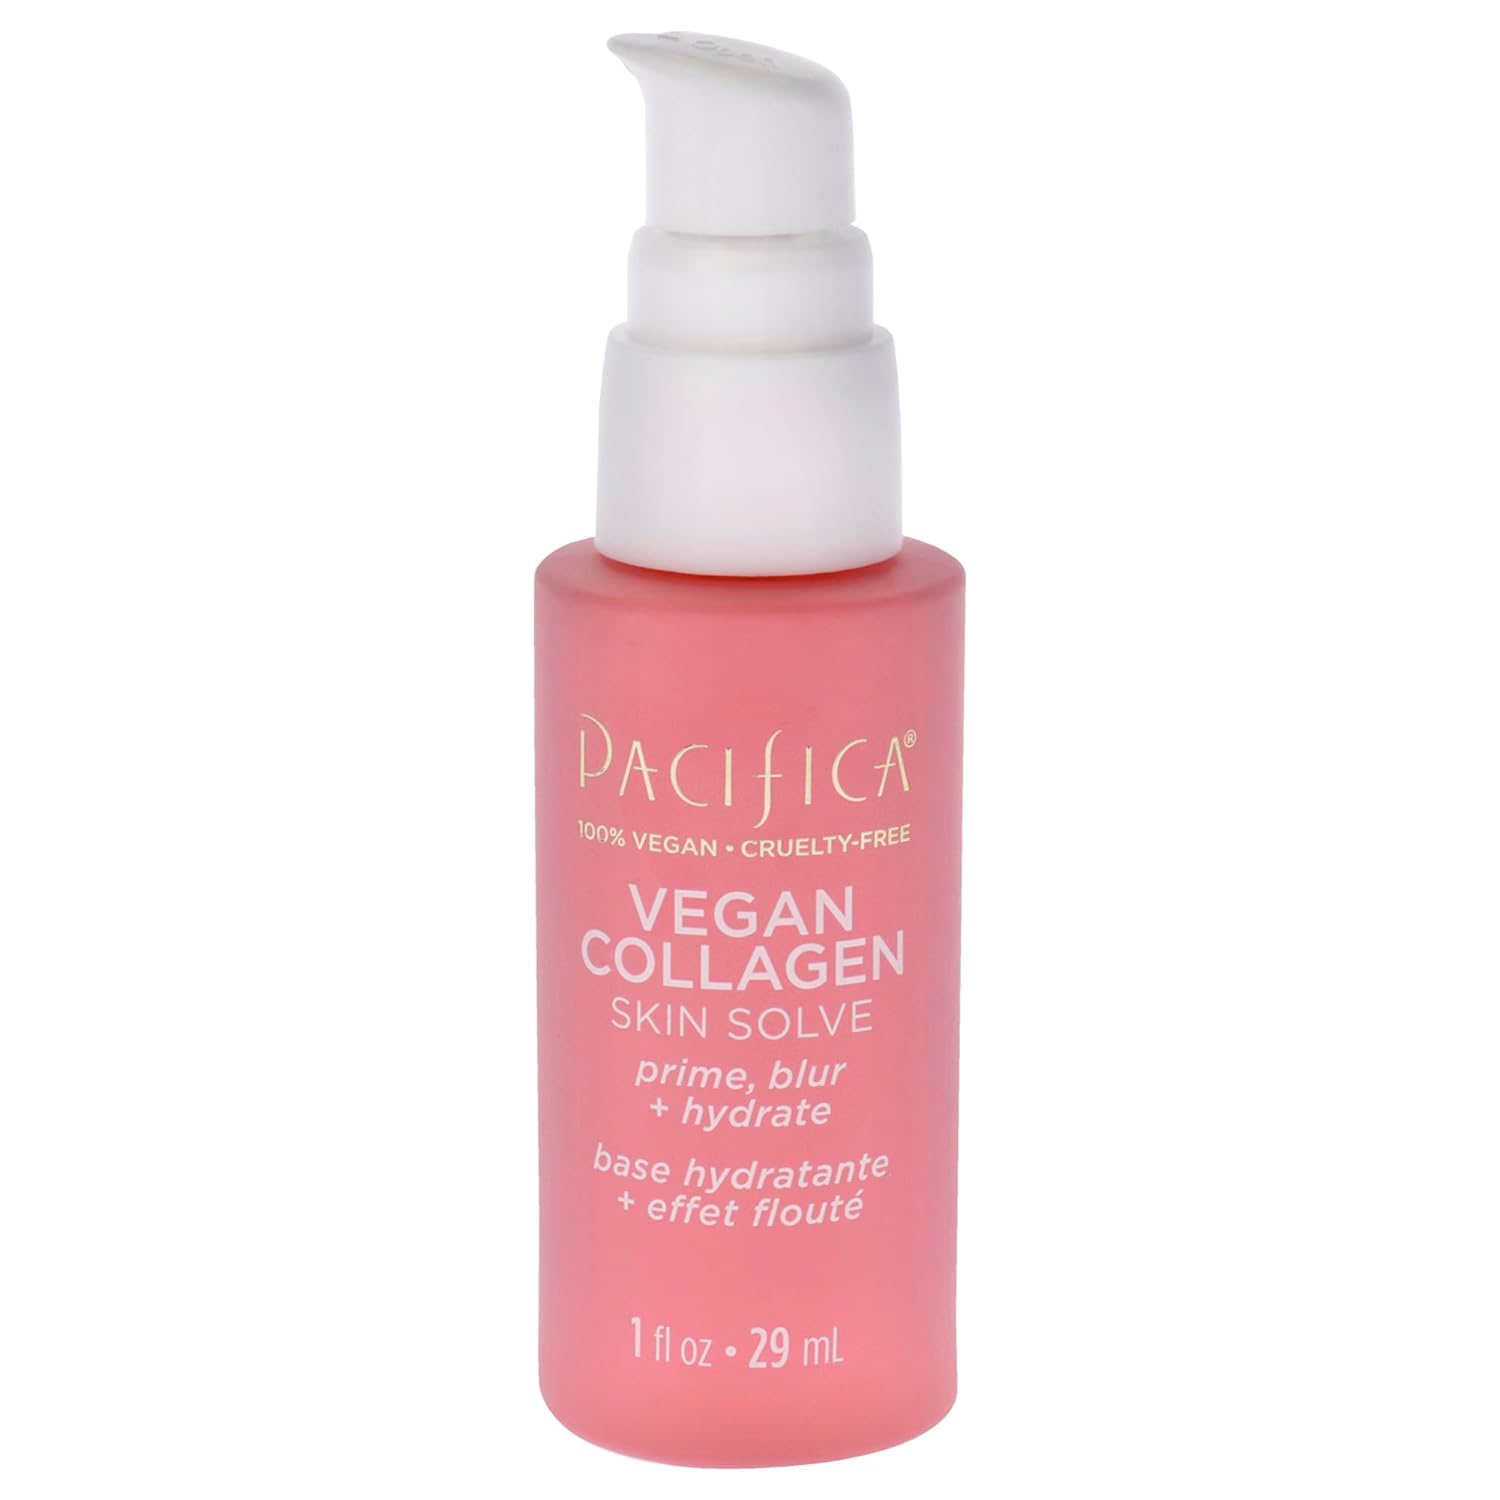 Vegan Collagen Skin Solve by Pacifica for Women - 1  Primer